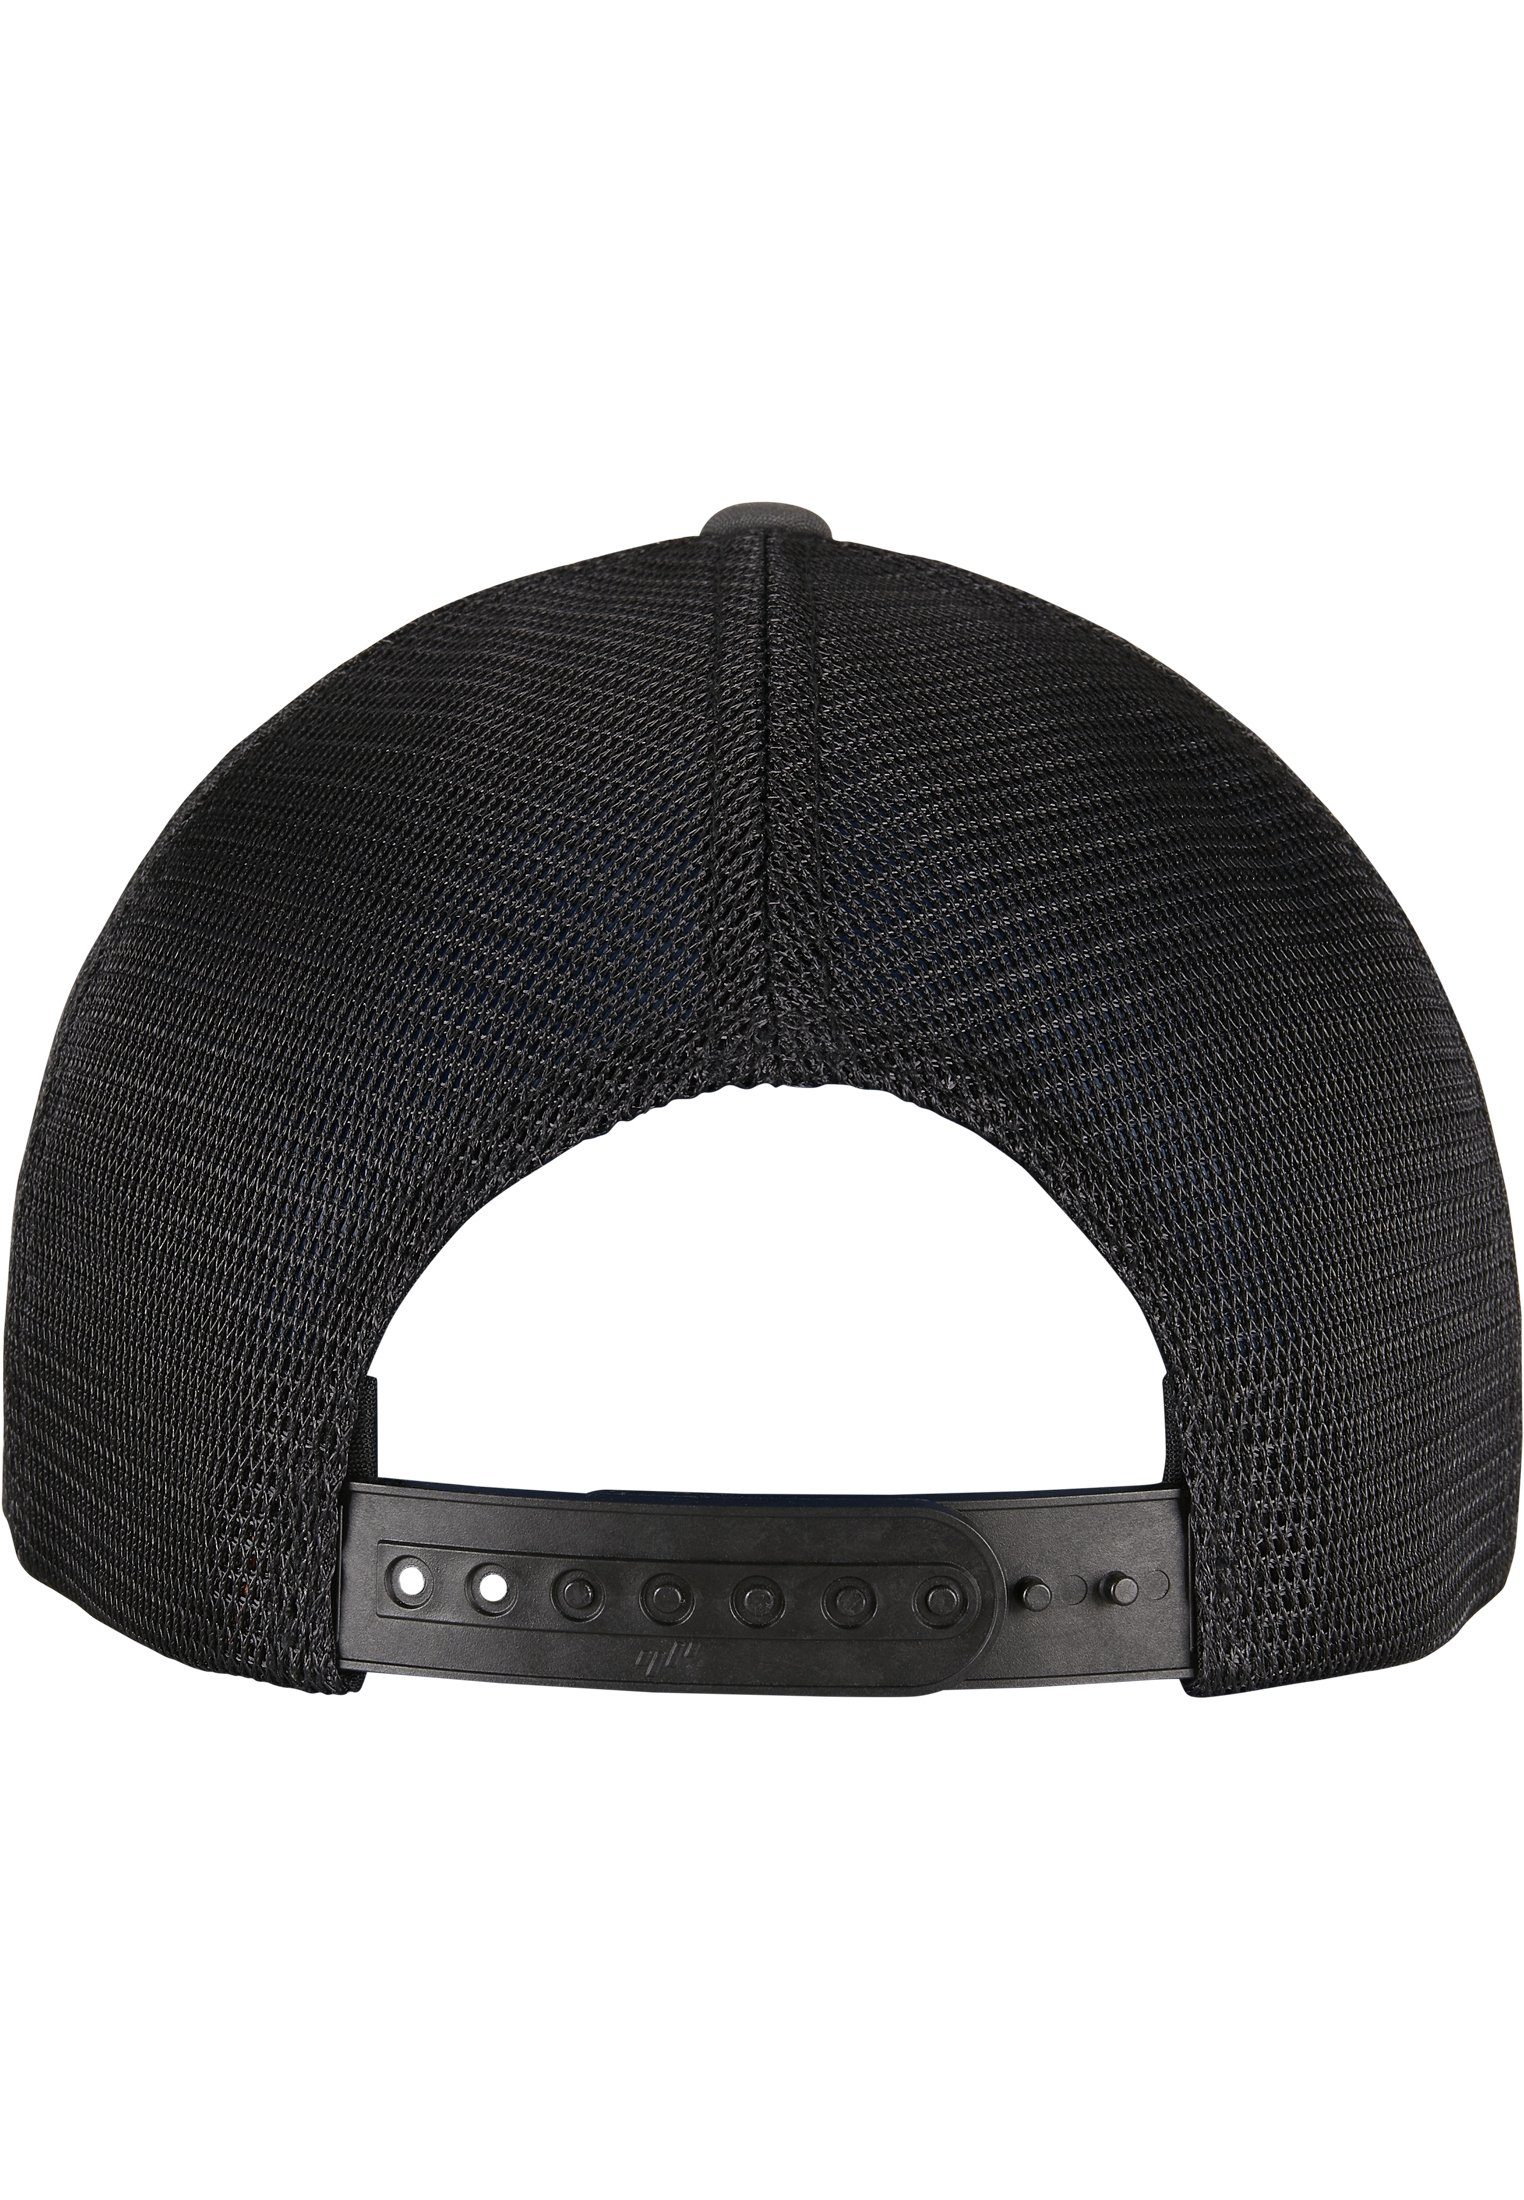 Flexfit Flex 360° Accessoires Cap 2-Tone charcoal/black Omnimesh Cap